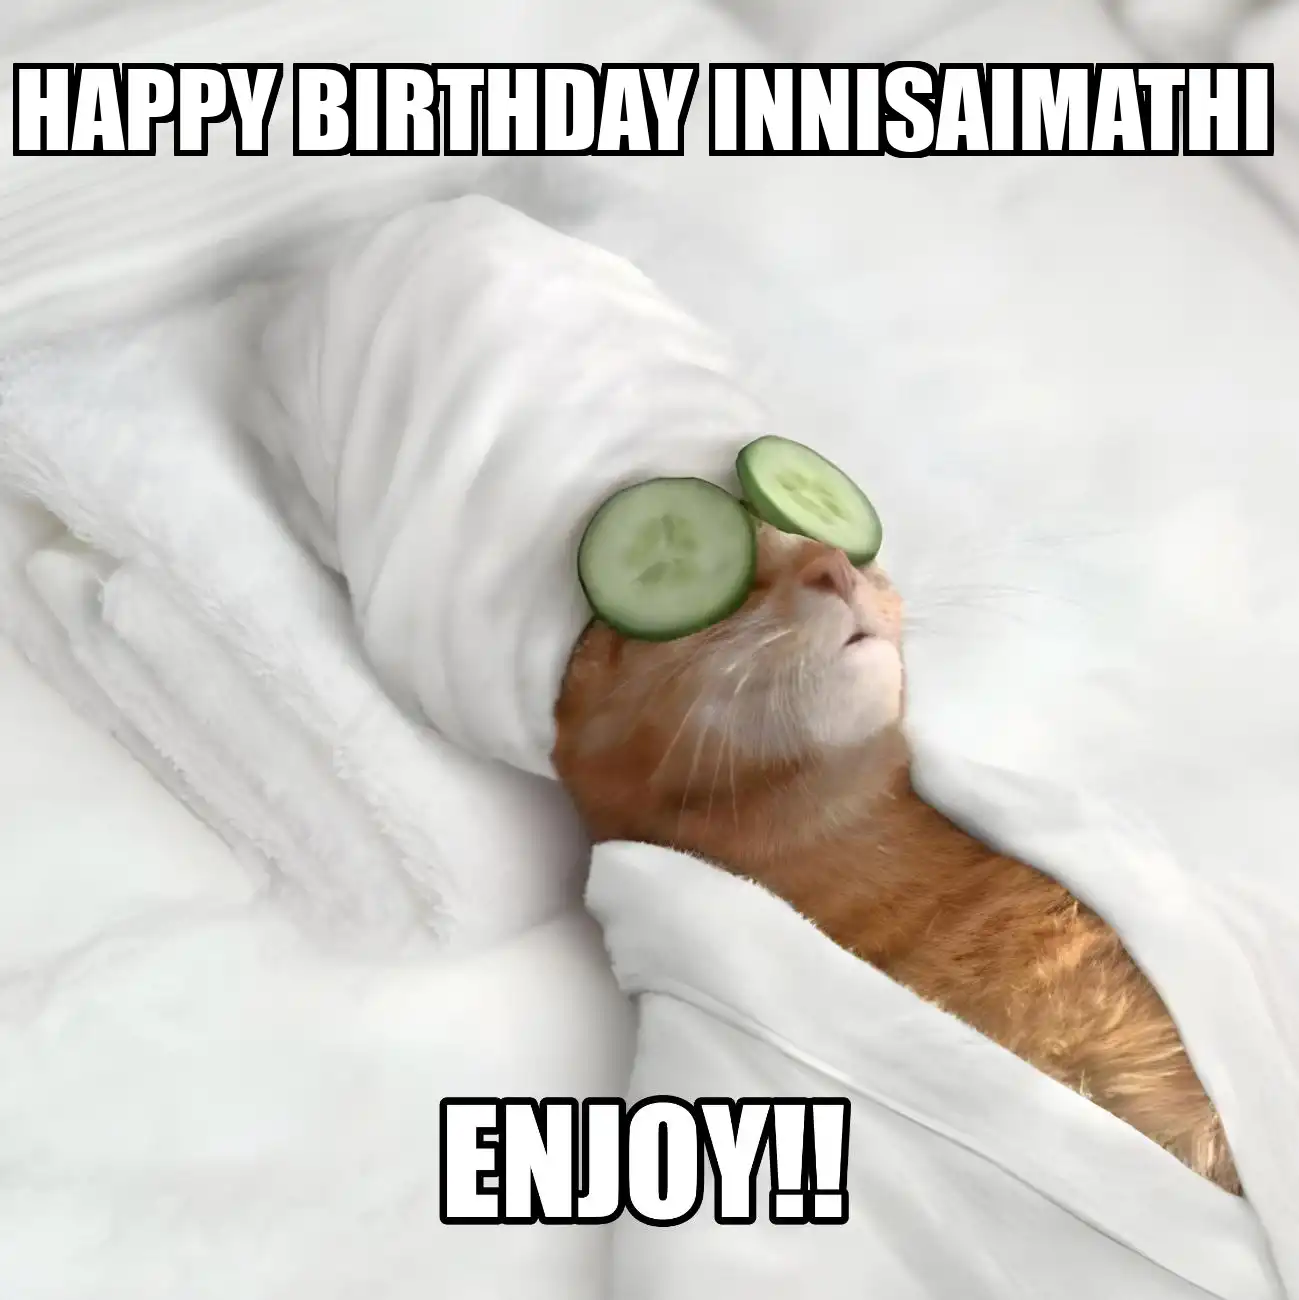 Happy Birthday Innisaimathi Enjoy Cat Meme